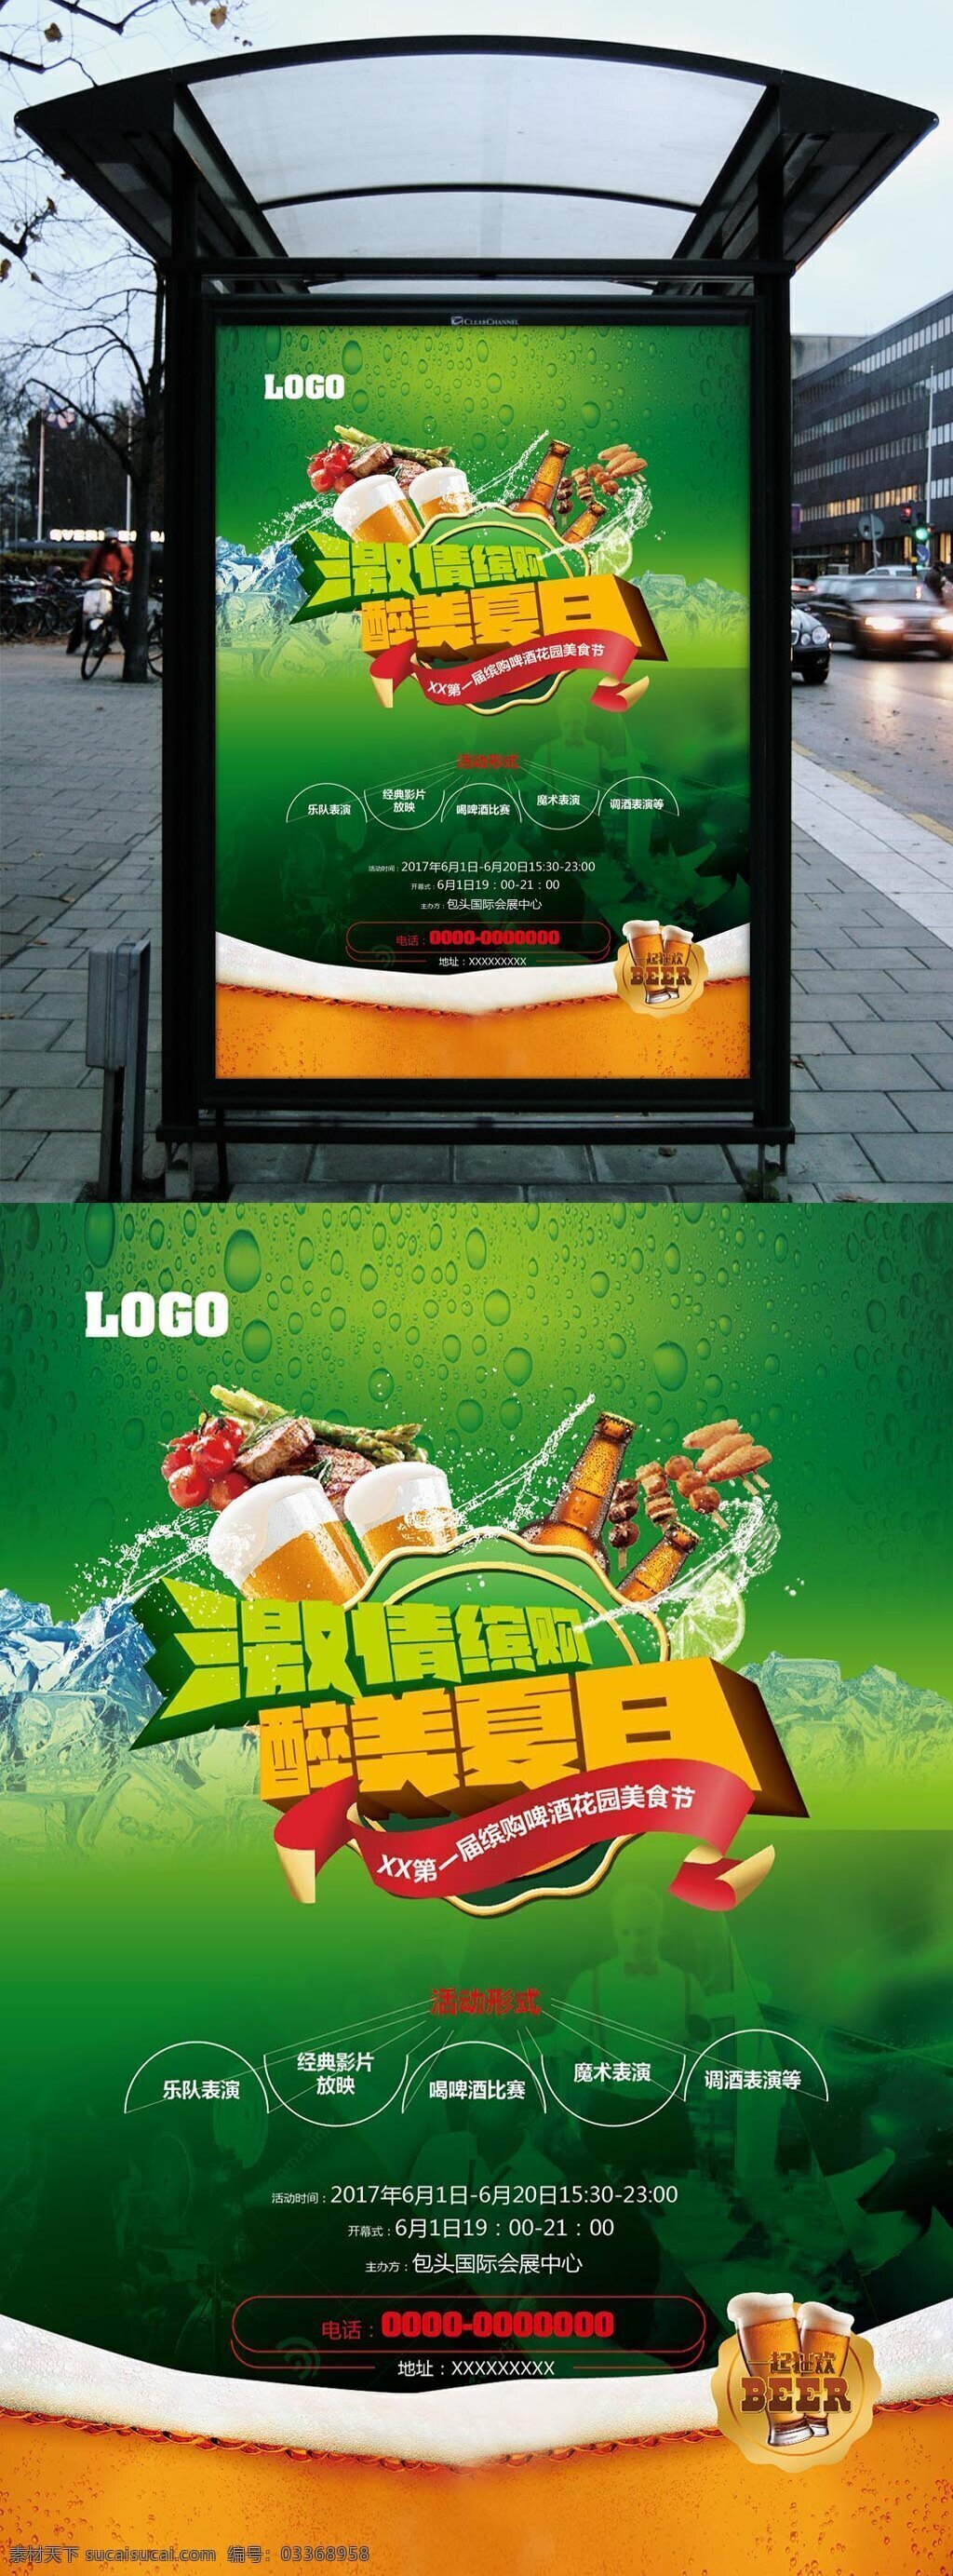 啤酒 美食节 海报 烧烤 单页 啤酒节 激情 醉美夏日 绿色风格 清爽海报 免费